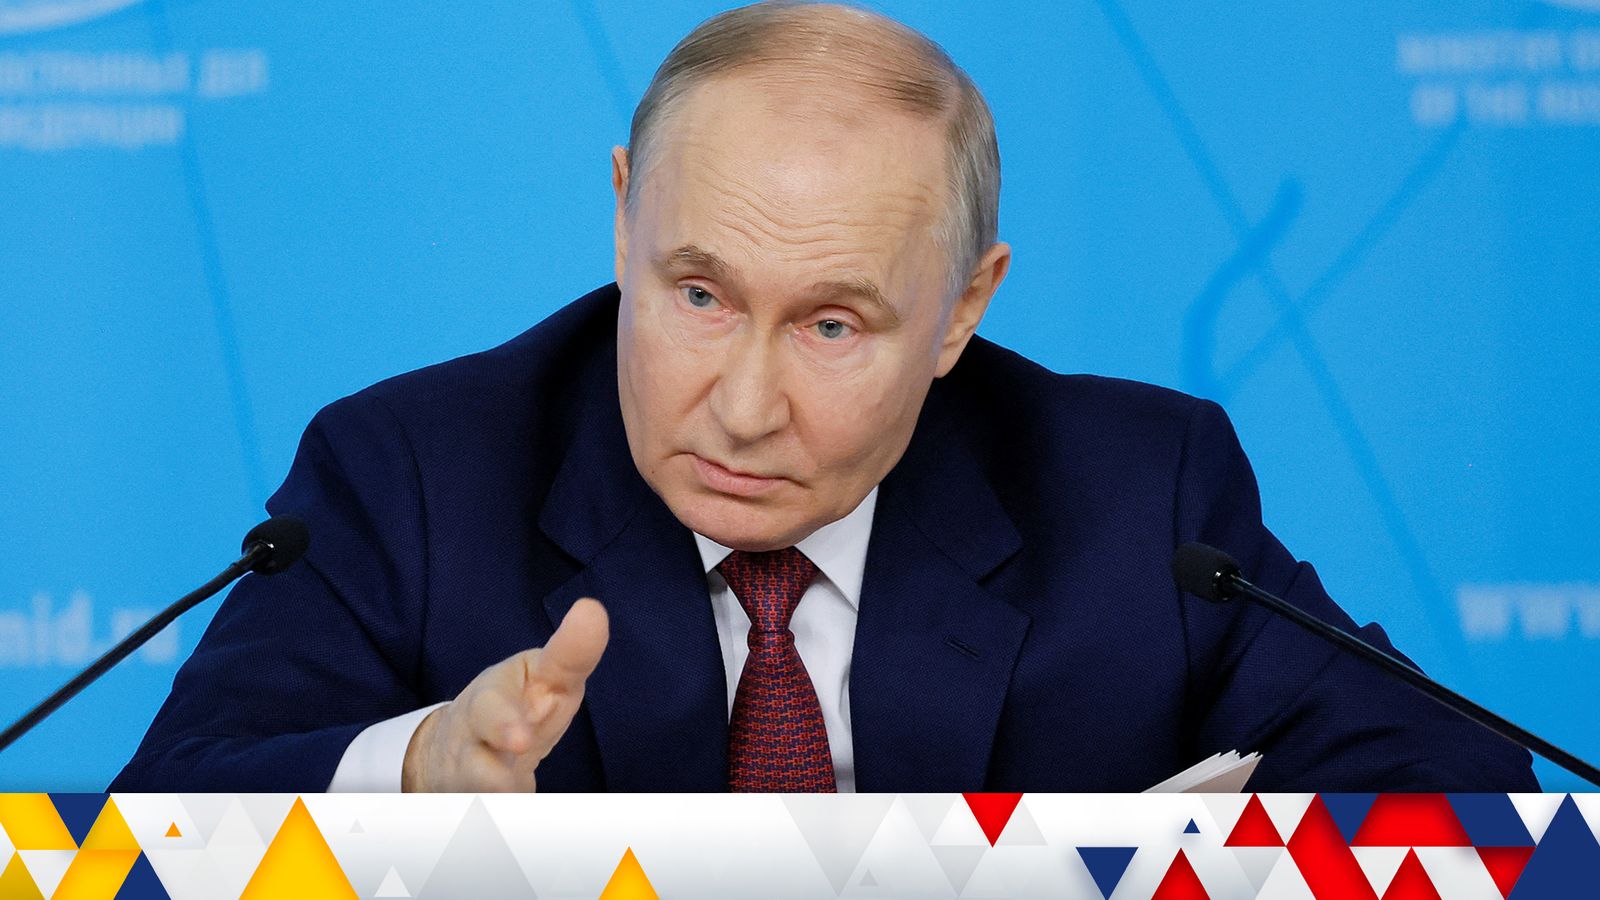 Война между Украиной и Россией: Путин устанавливает условия прекращения огня, но Украина говорит, что это «полный обман» |  Мировые новости